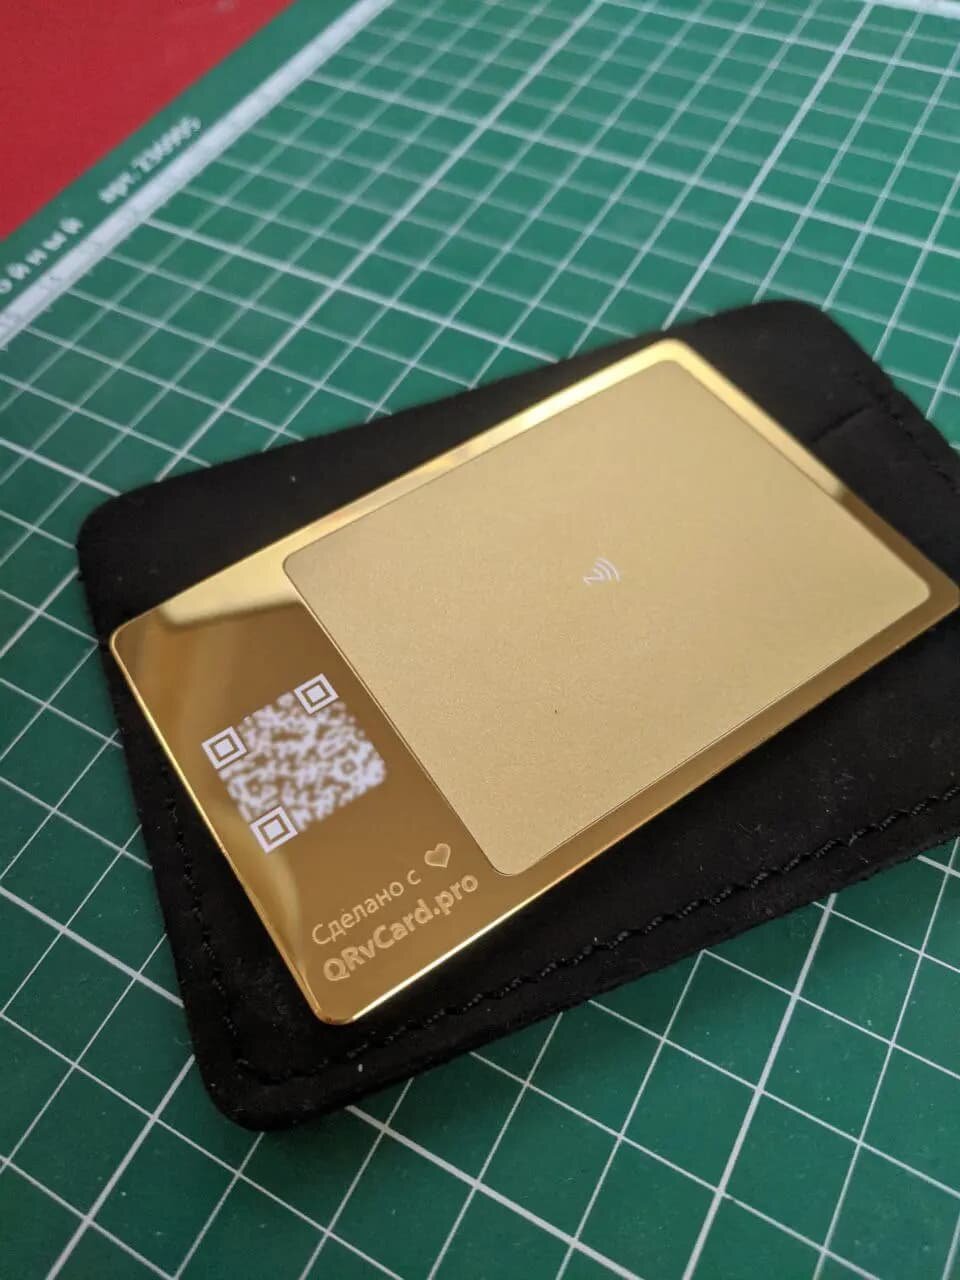 Умная электронная визитка на NFC-карте из металла (Gold 24K) с бесплатной виртуальной картой